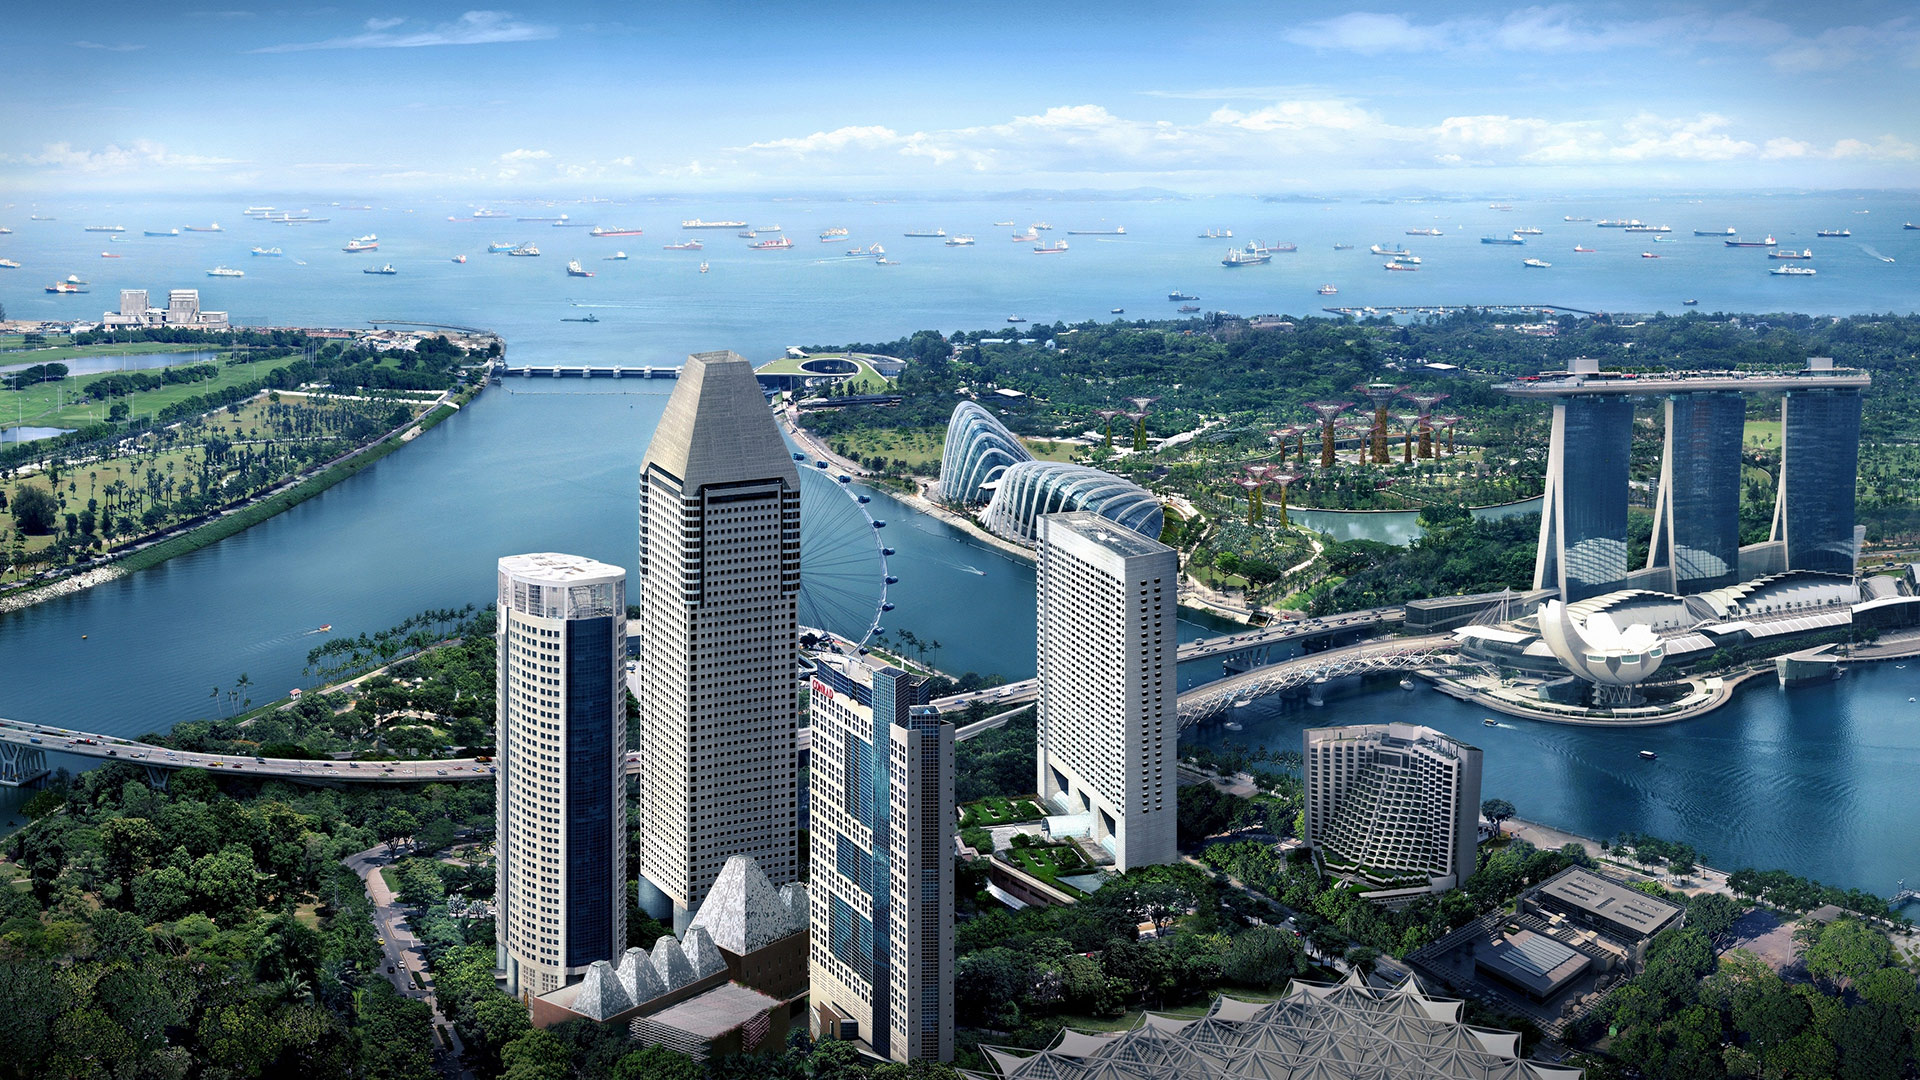 【走進東南亞】借助立足新加坡特殊地位，中國石油在這裡開展油氣貿易。圖片：中石油在新加坡的項目所在地——美年大廈濱海灣全景。 隱藏文字說明